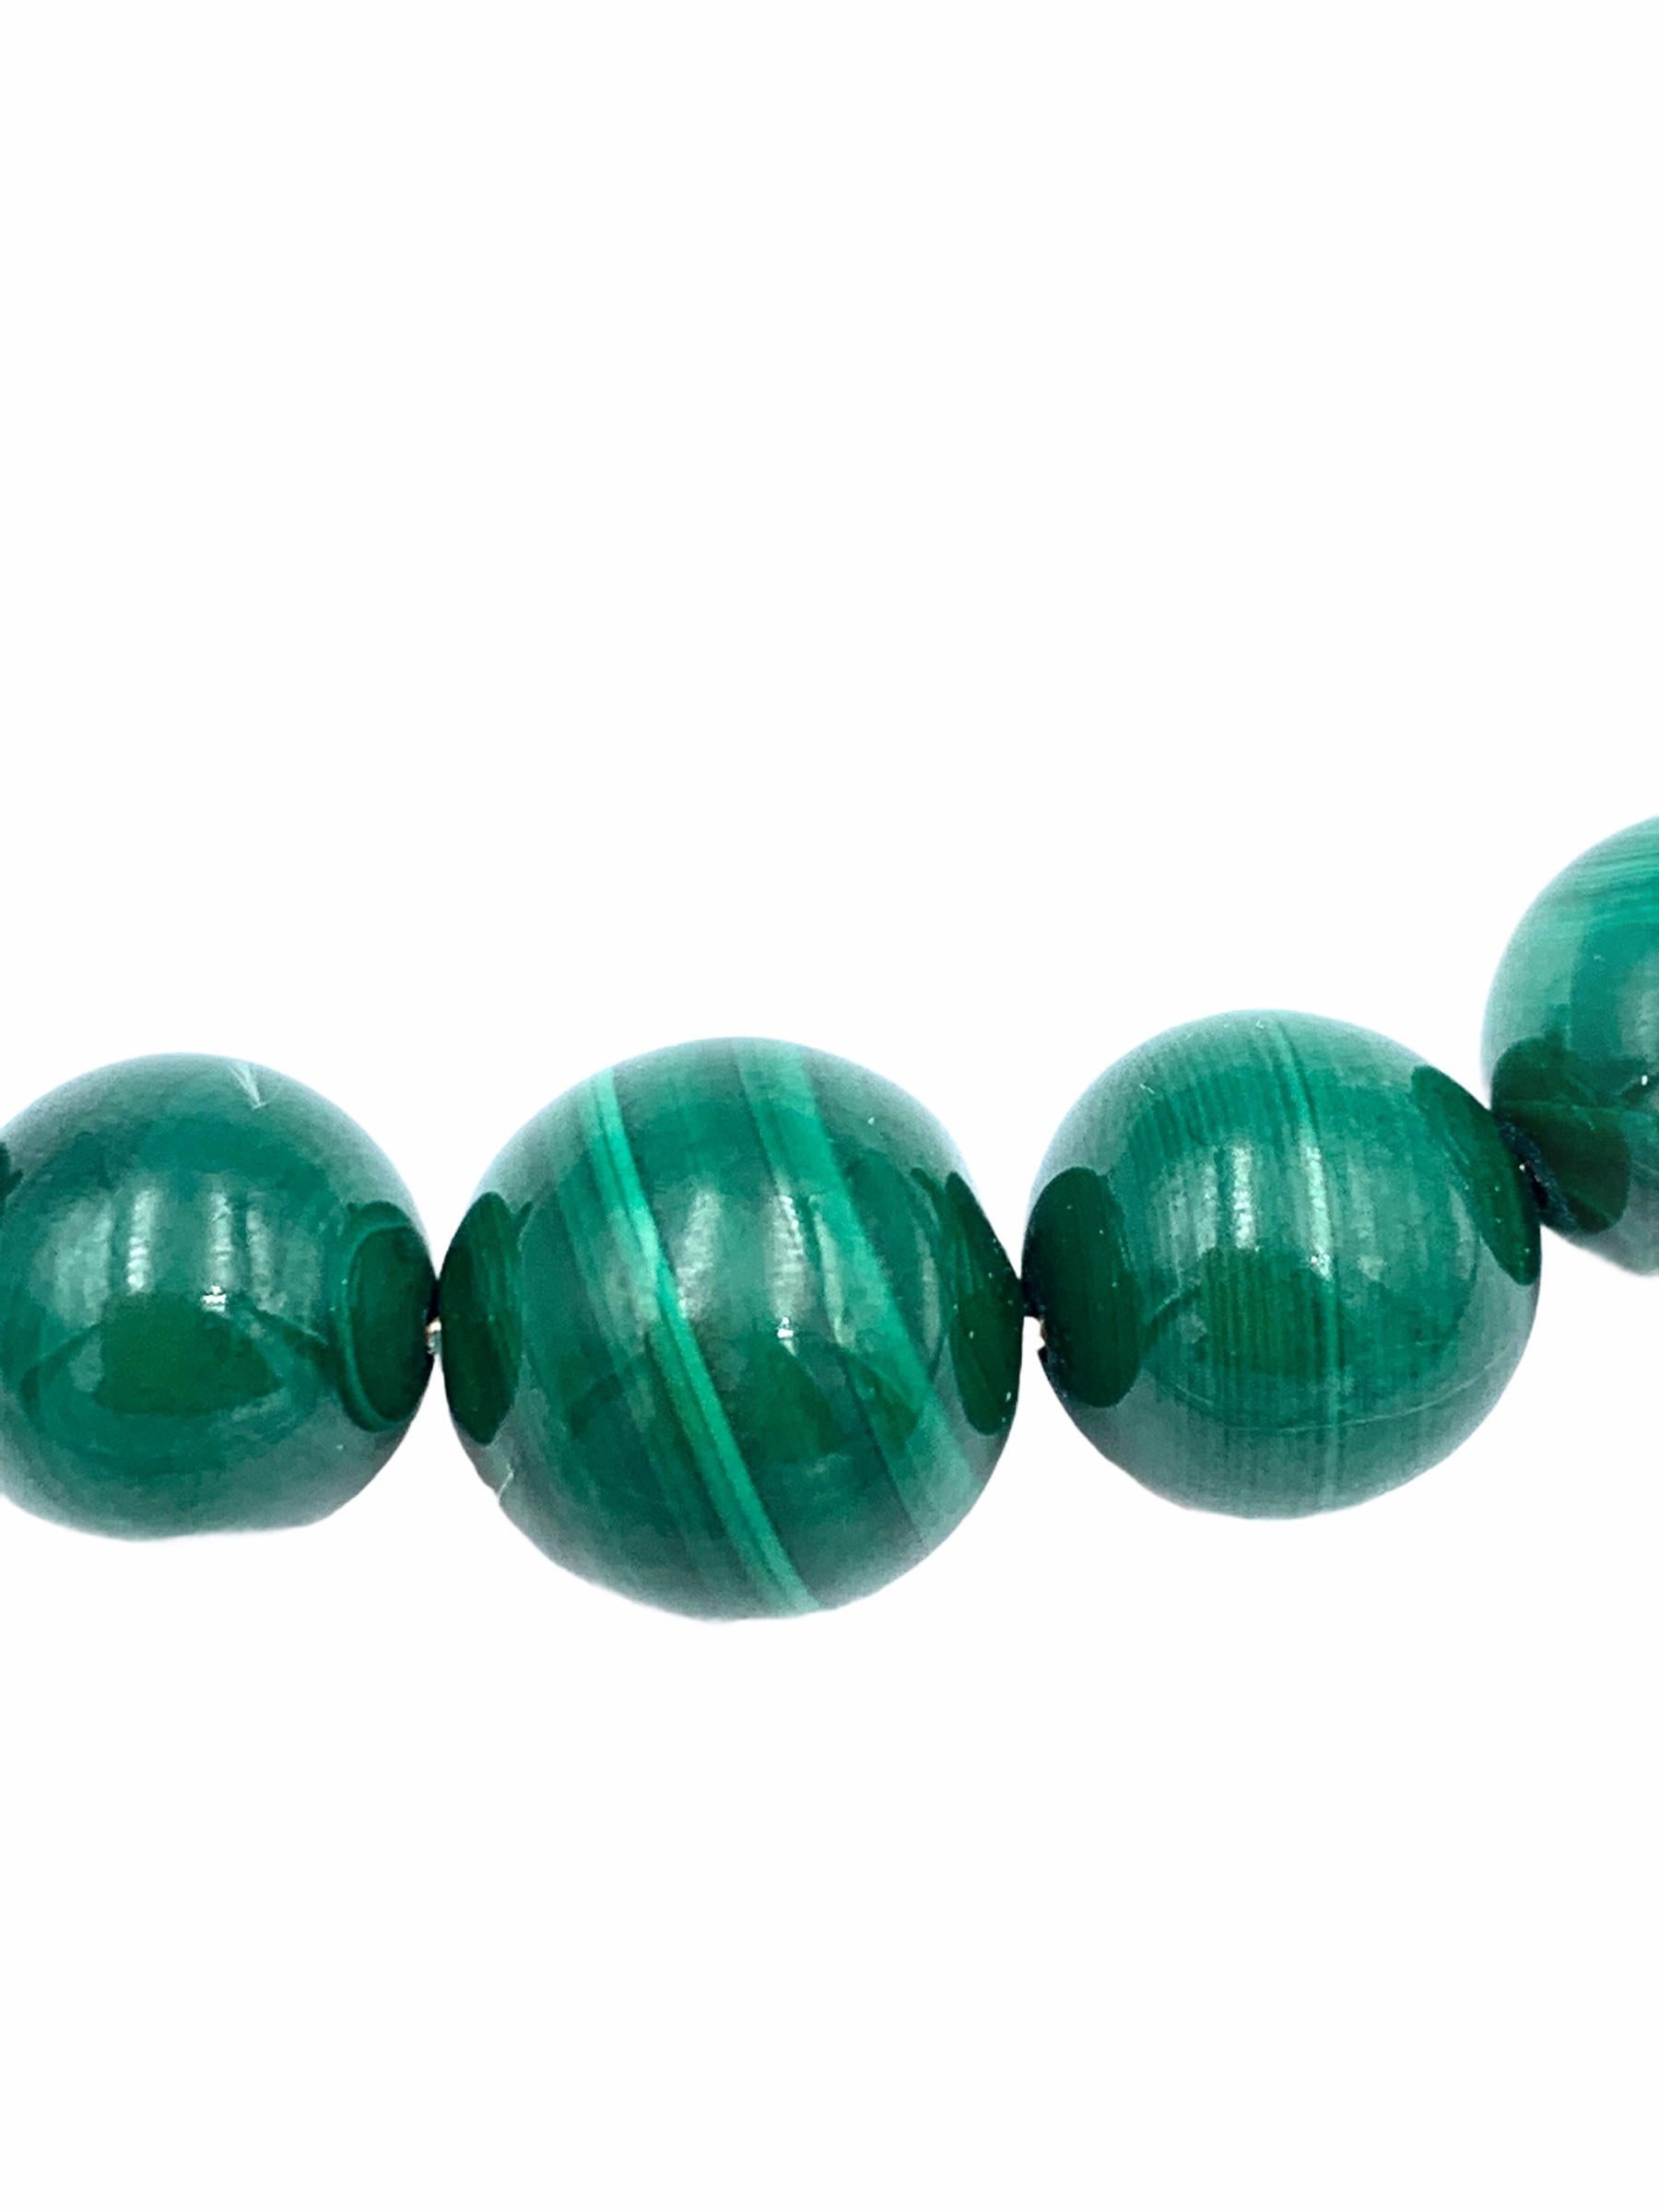 Fabriquées à la main en or jaune 9 carats, les perles de malachite suspendues sont enfilées avec un fil d'or massif et graduées sur une délicate chaîne à câble de 1,7 mm. Les jolis tourbillons verts de la perle centrale mesurent 12 mm, 10 mm les